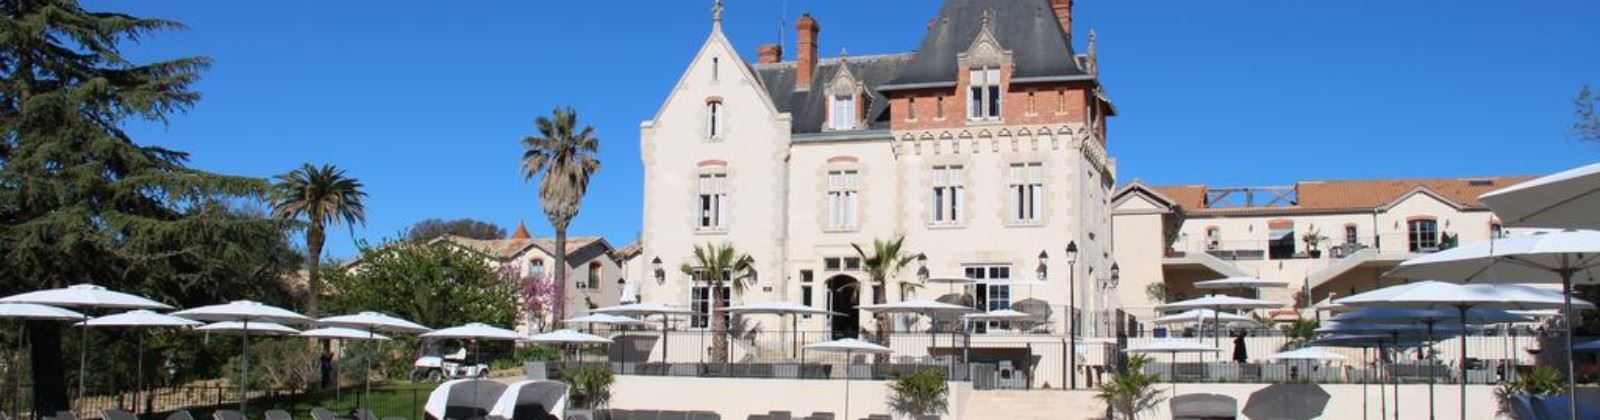 OLEVENE image - chateau-saint-pierre-de-serjac-olevene-hotel-restaurant-conference-convention-